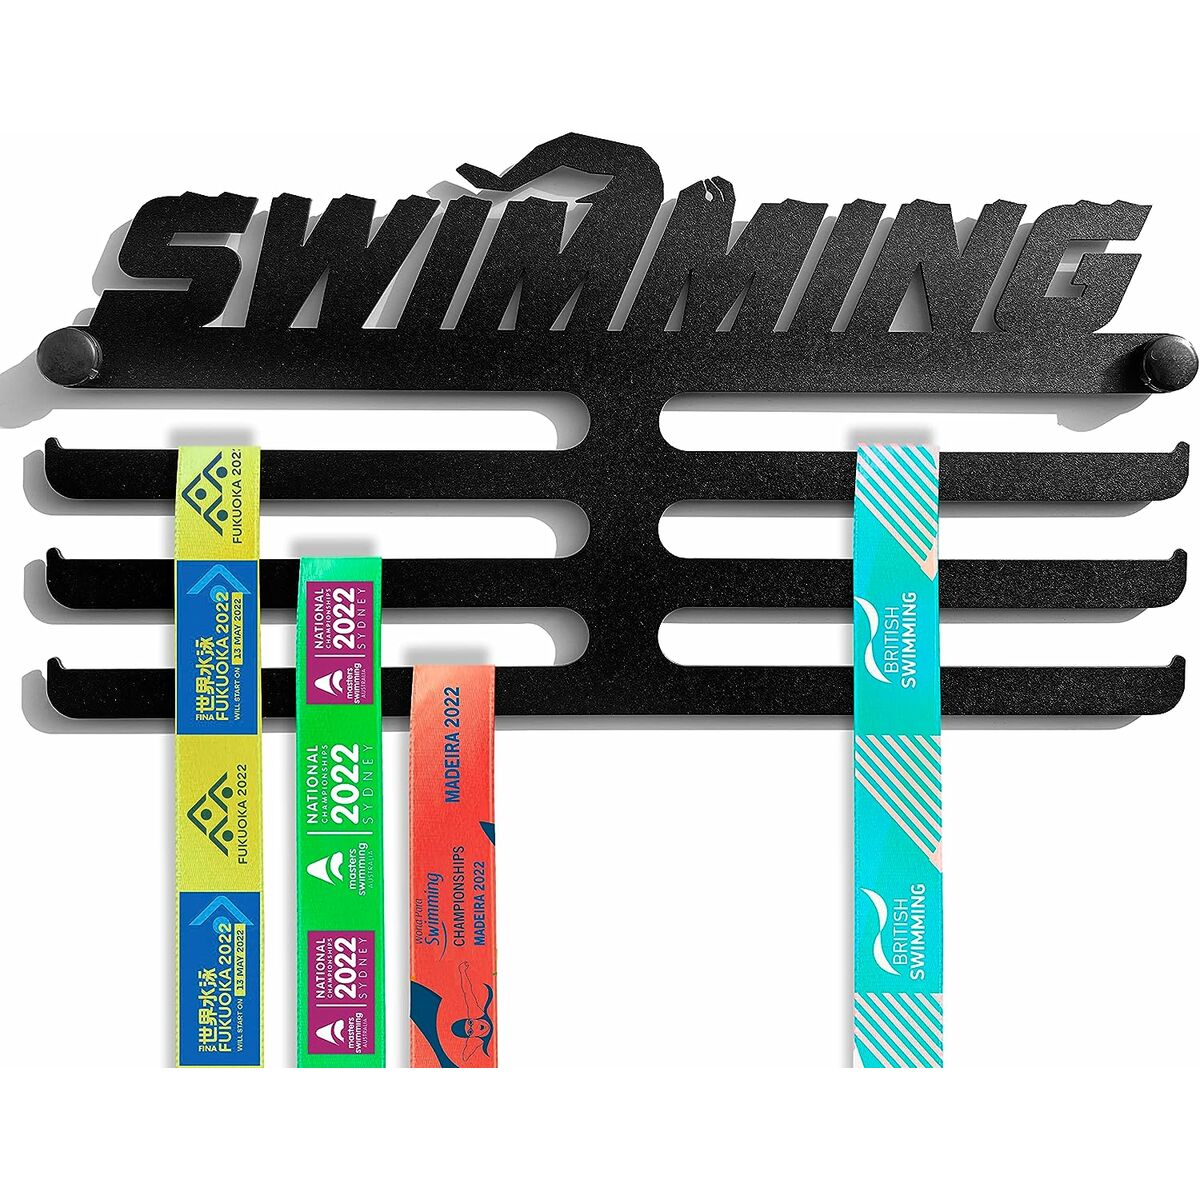 Porte-médailles Meollo Swimming